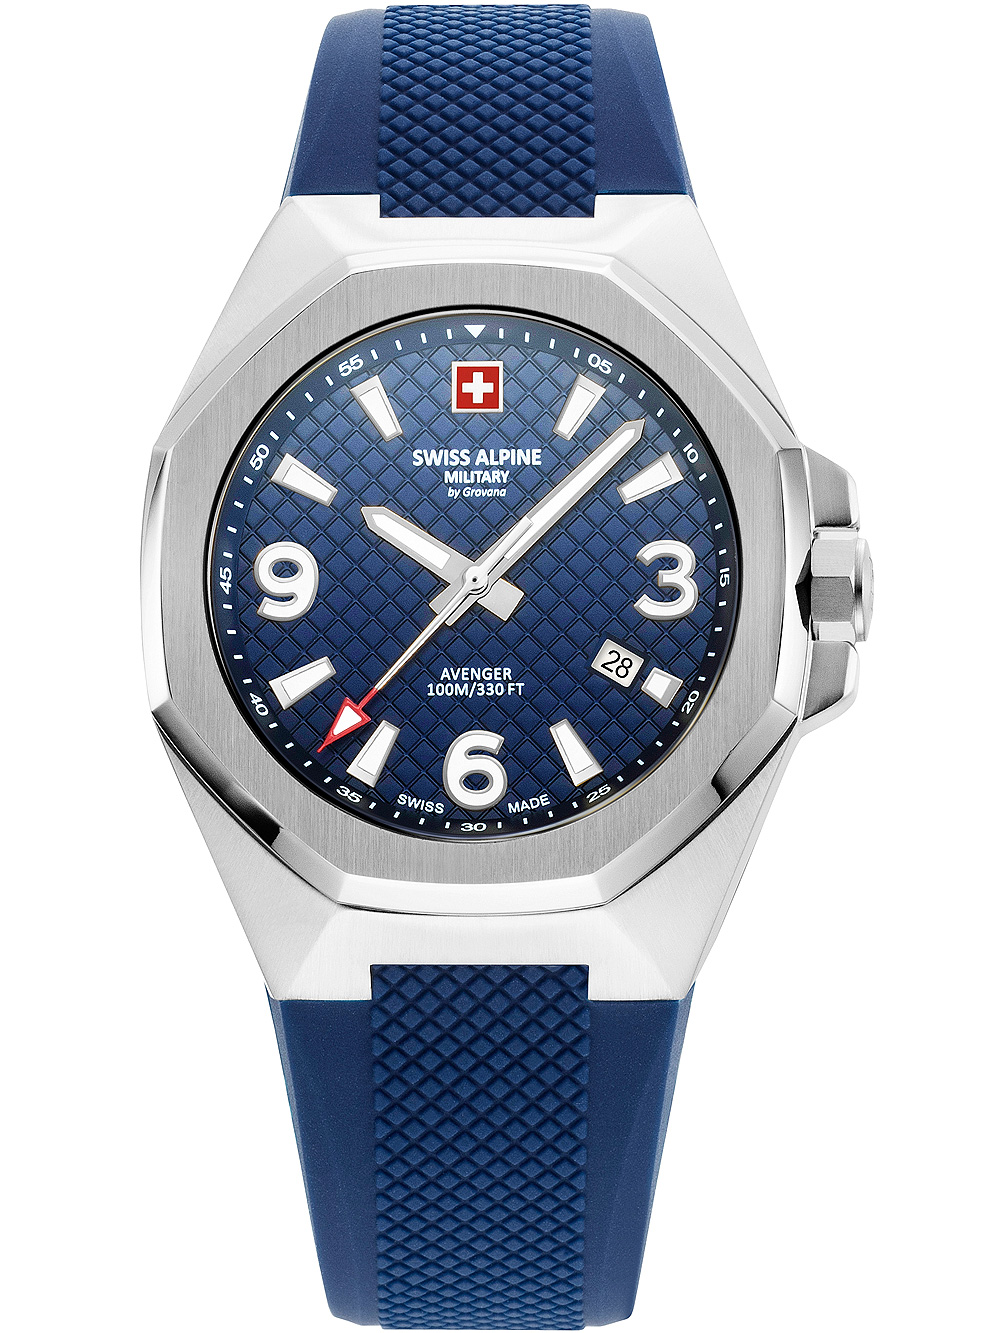 Pánské hodinky Swiss Alpine Military 7005.1835 Avenger